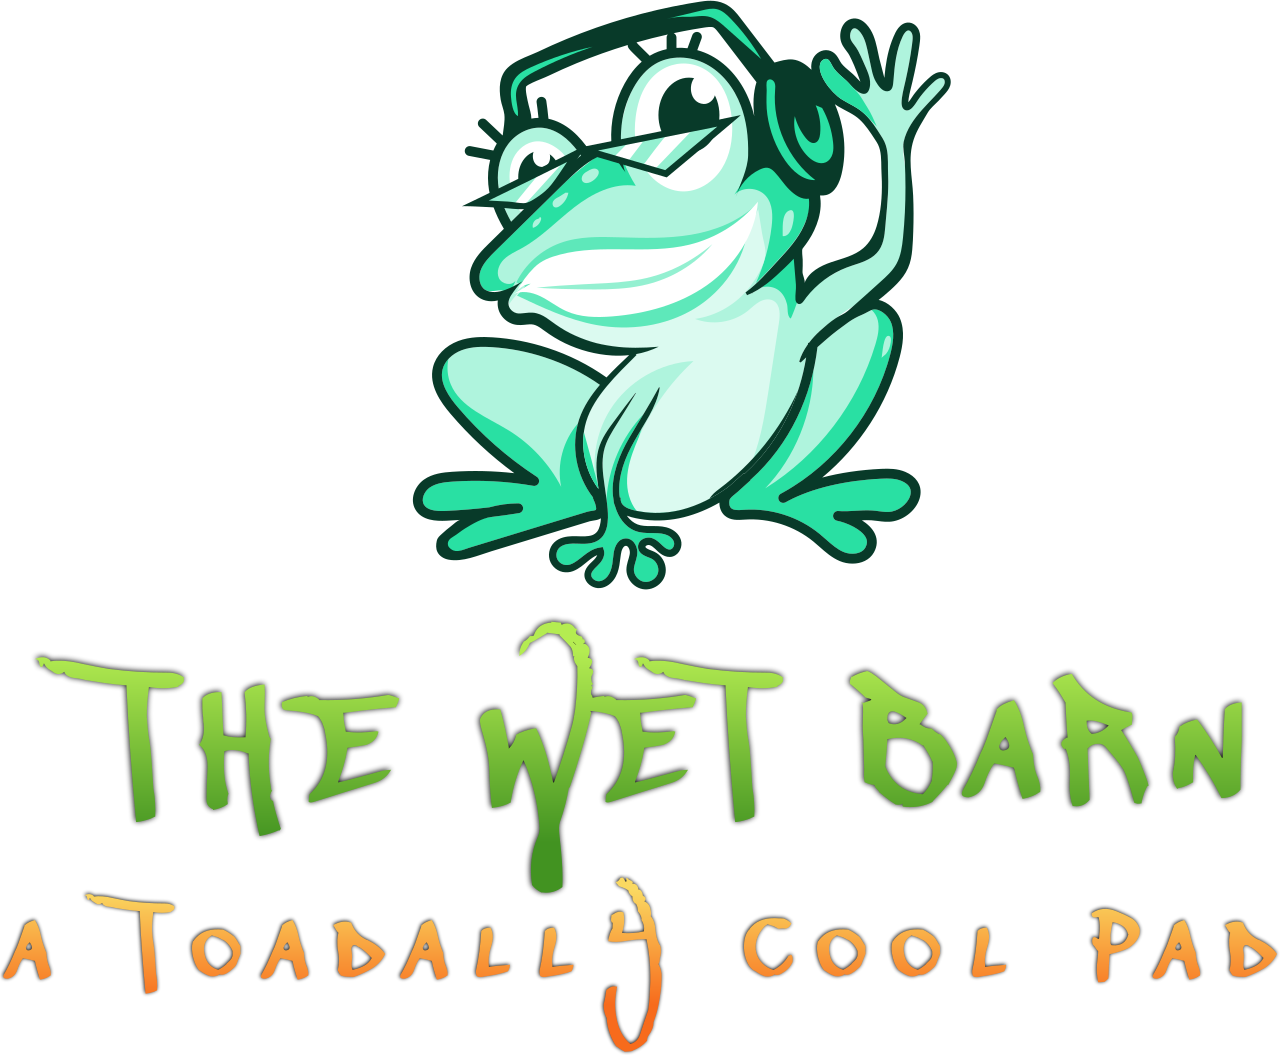 The Wet BarN's logo